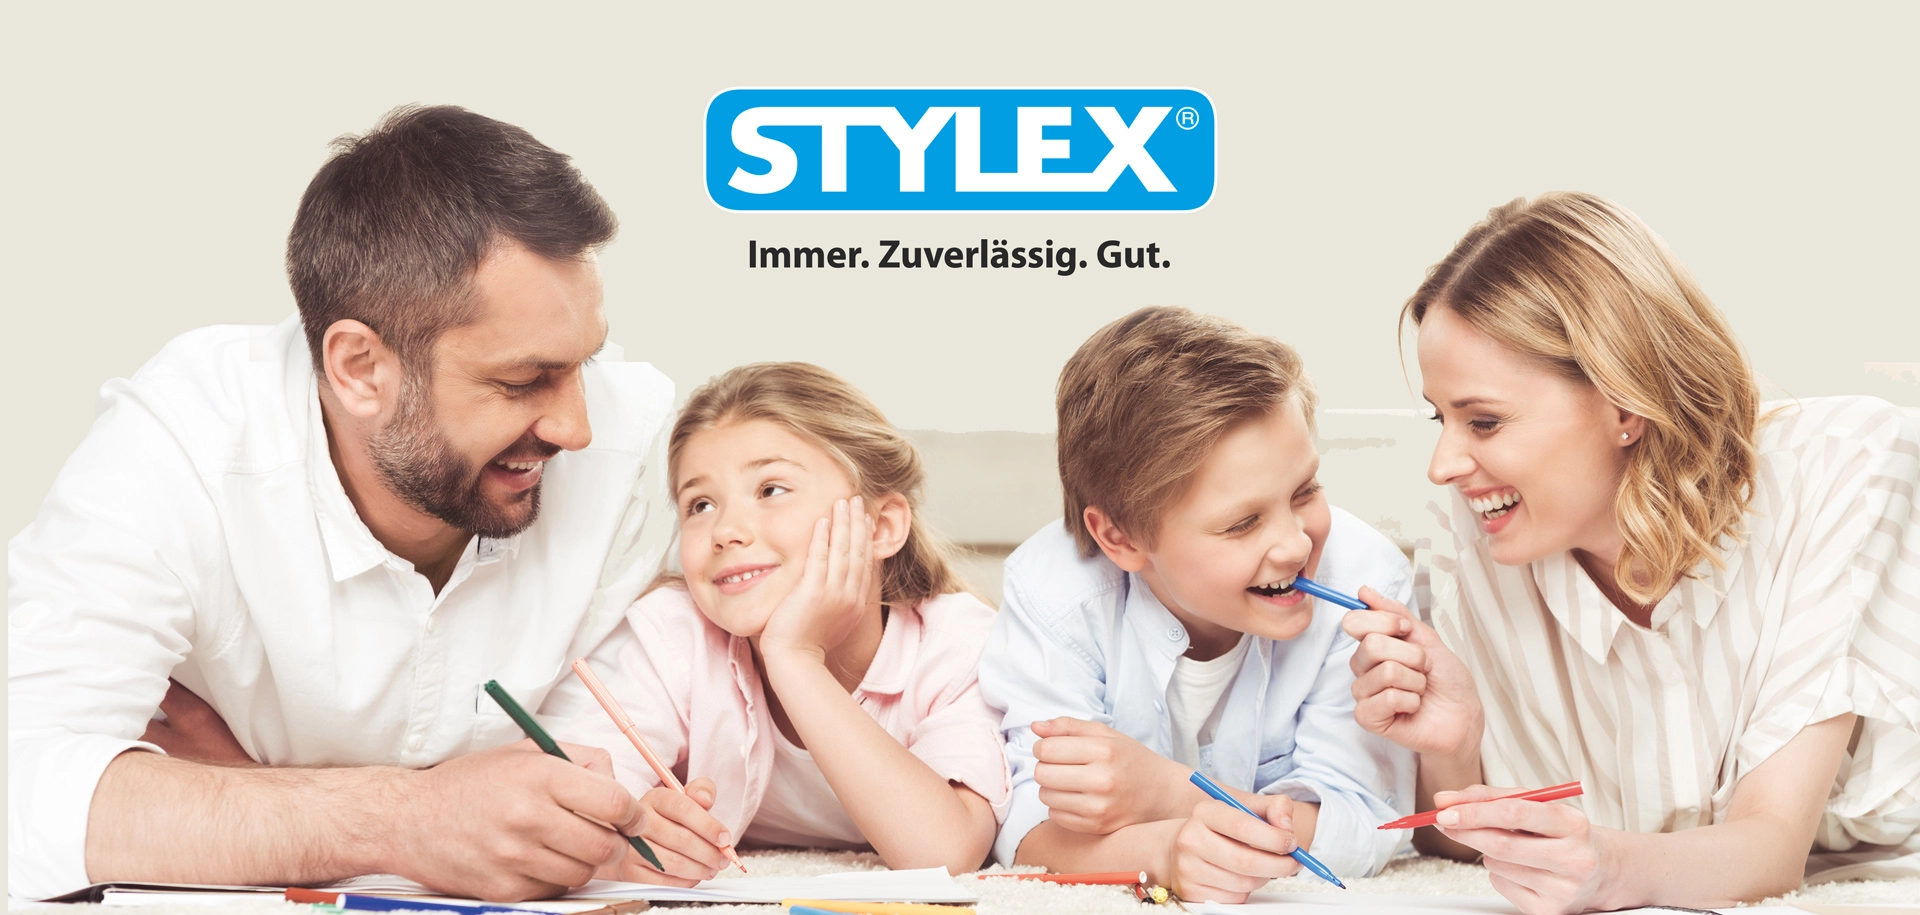 Eine Familie bestehend aus Mann, Frau, Junge und Mädchen mit Stiften in der Hand und Stylex Logo über ihnen